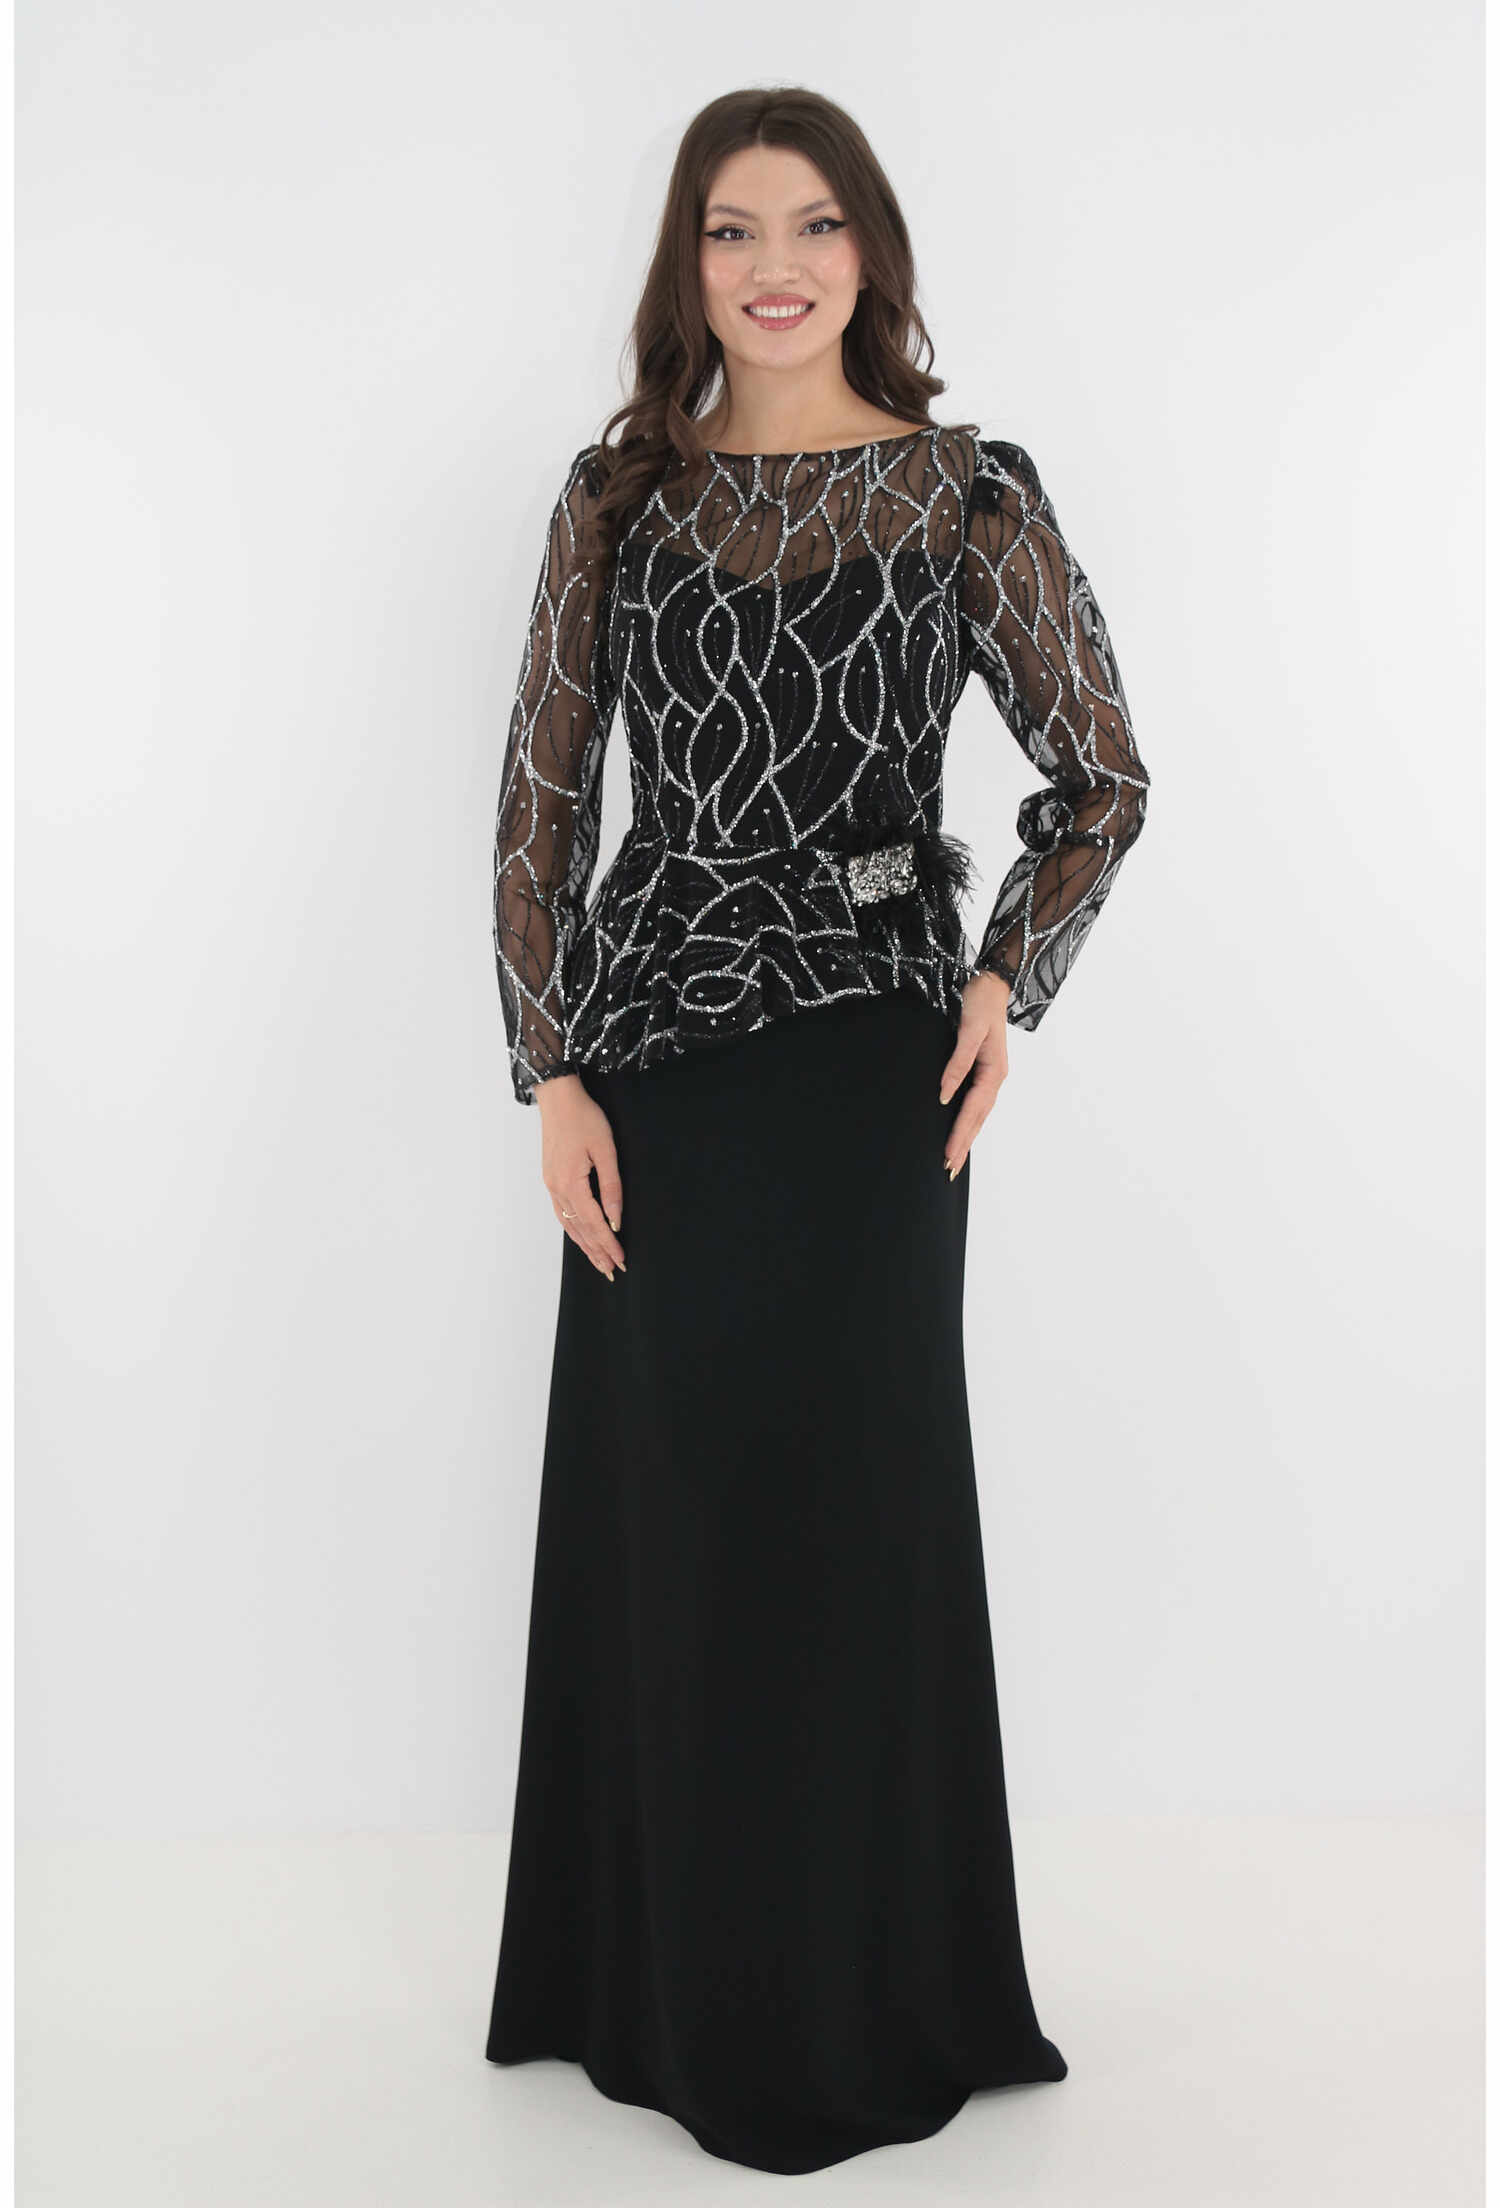 Rochie eleganta lunga neagra cu dantela argintie